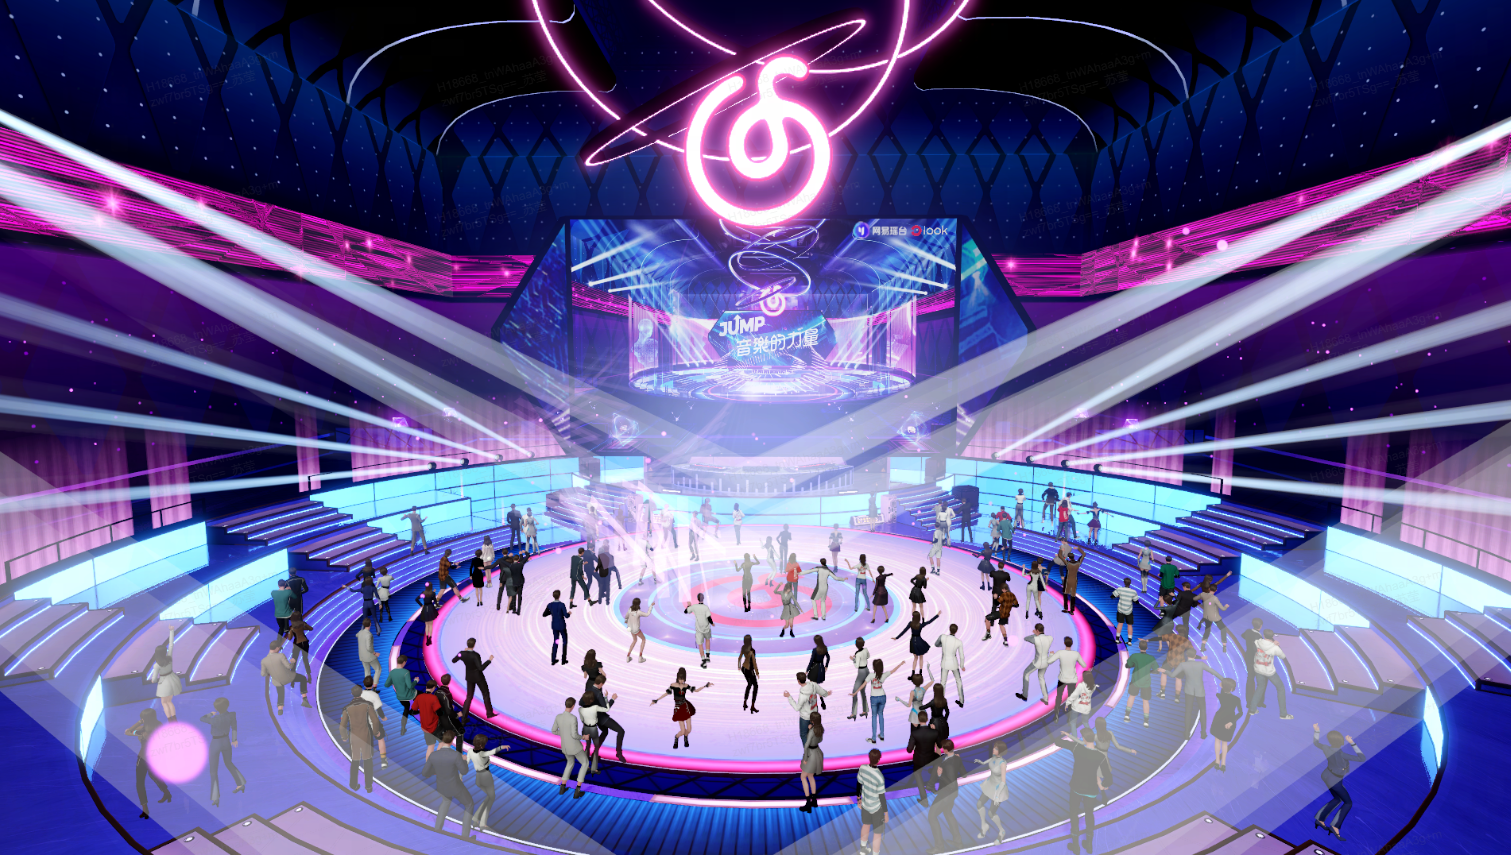 这是一张描绘虚拟现实音乐会场景的插画，人们在舞台周围聚集，中心有DJ台，场馆内灯光炫彩，氛围活跃。